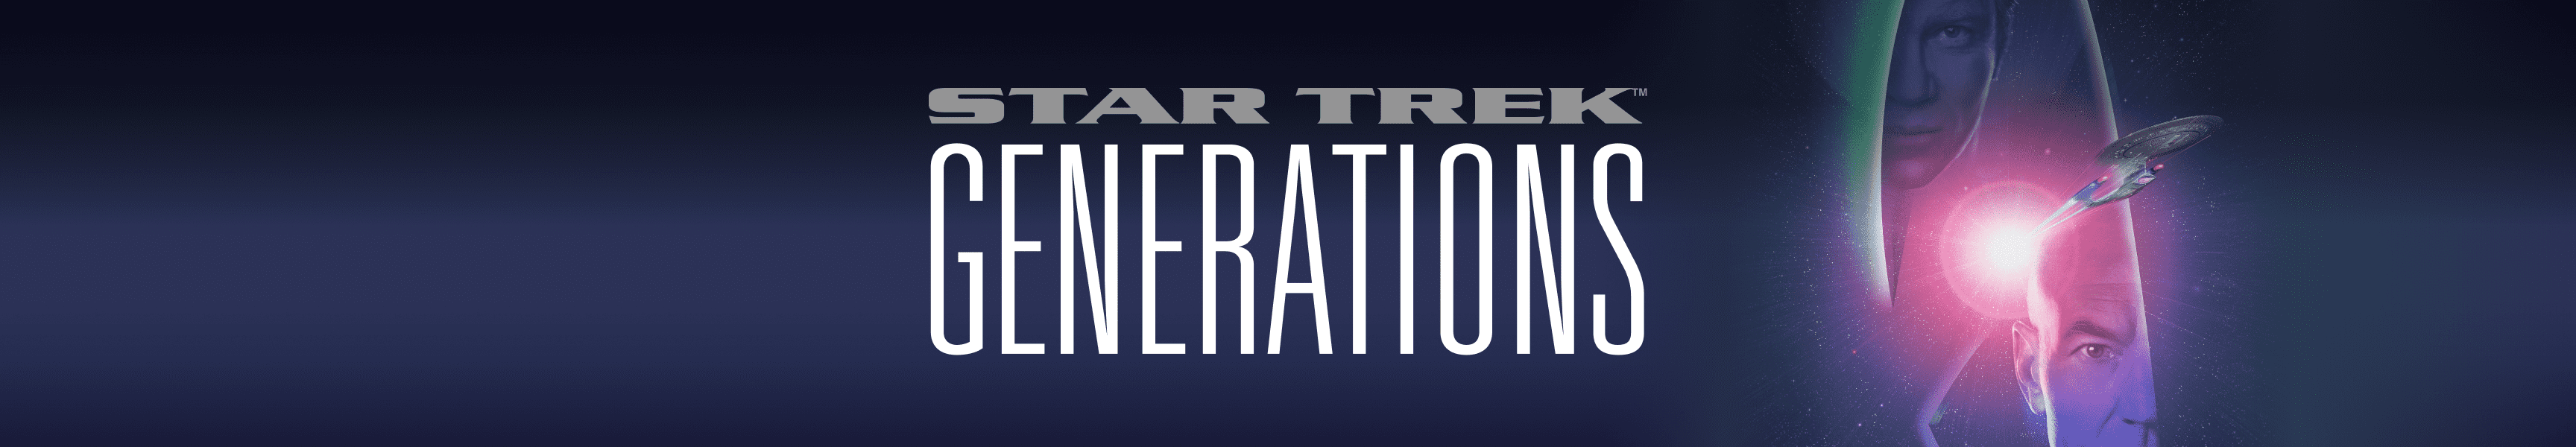 Star Trek Generationen 25